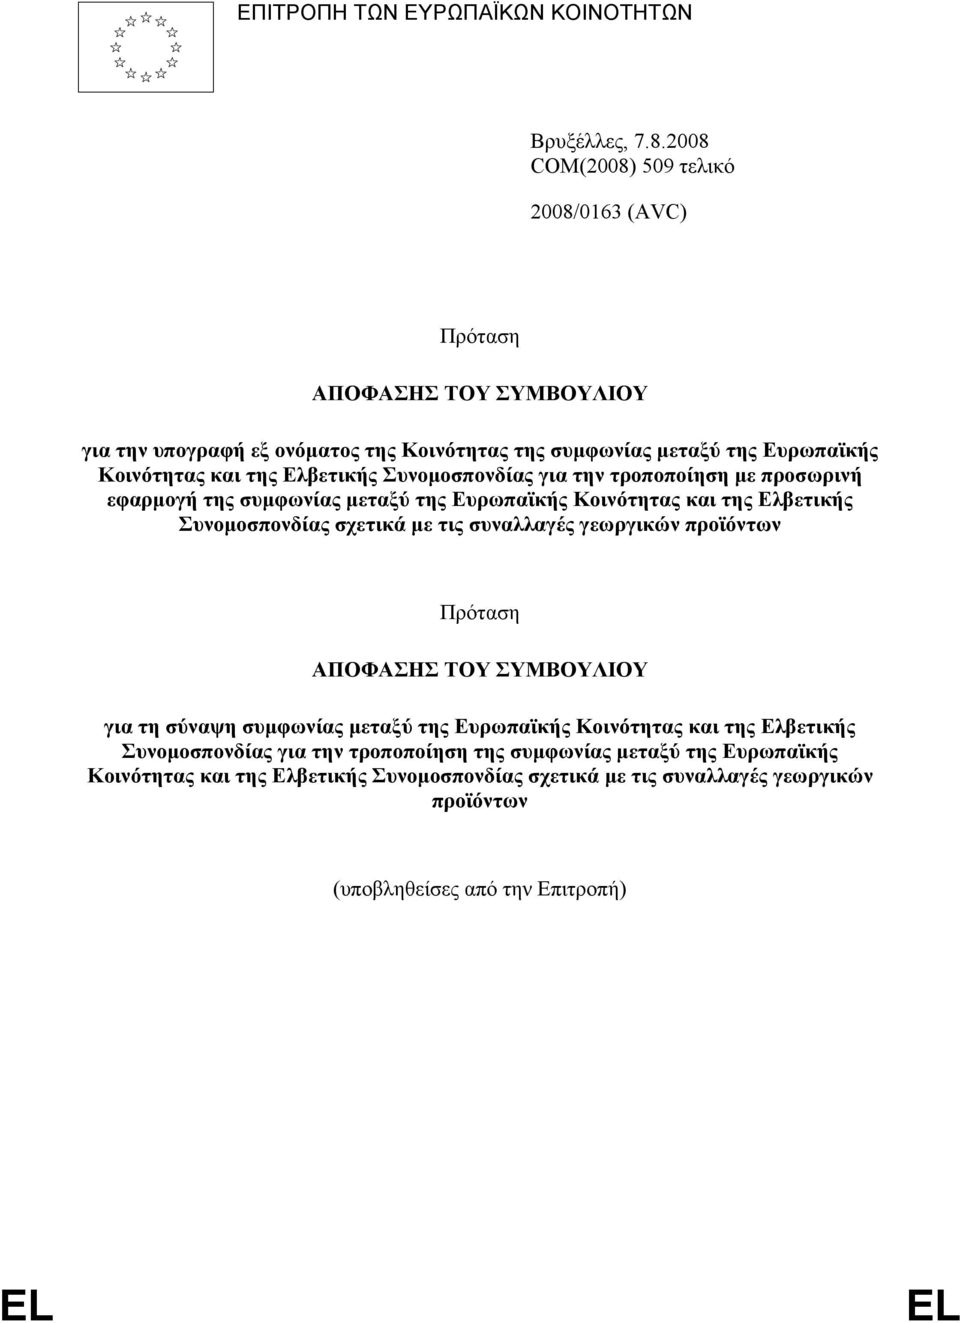 Ελβετικής Συνομοσπονδίας για την τροποποίηση με προσωρινή εφαρμογή της συμφωνίας μεταξύ της Ευρωπαϊκής Κοινότητας και της Ελβετικής Συνομοσπονδίας σχετικά με τις συναλλαγές